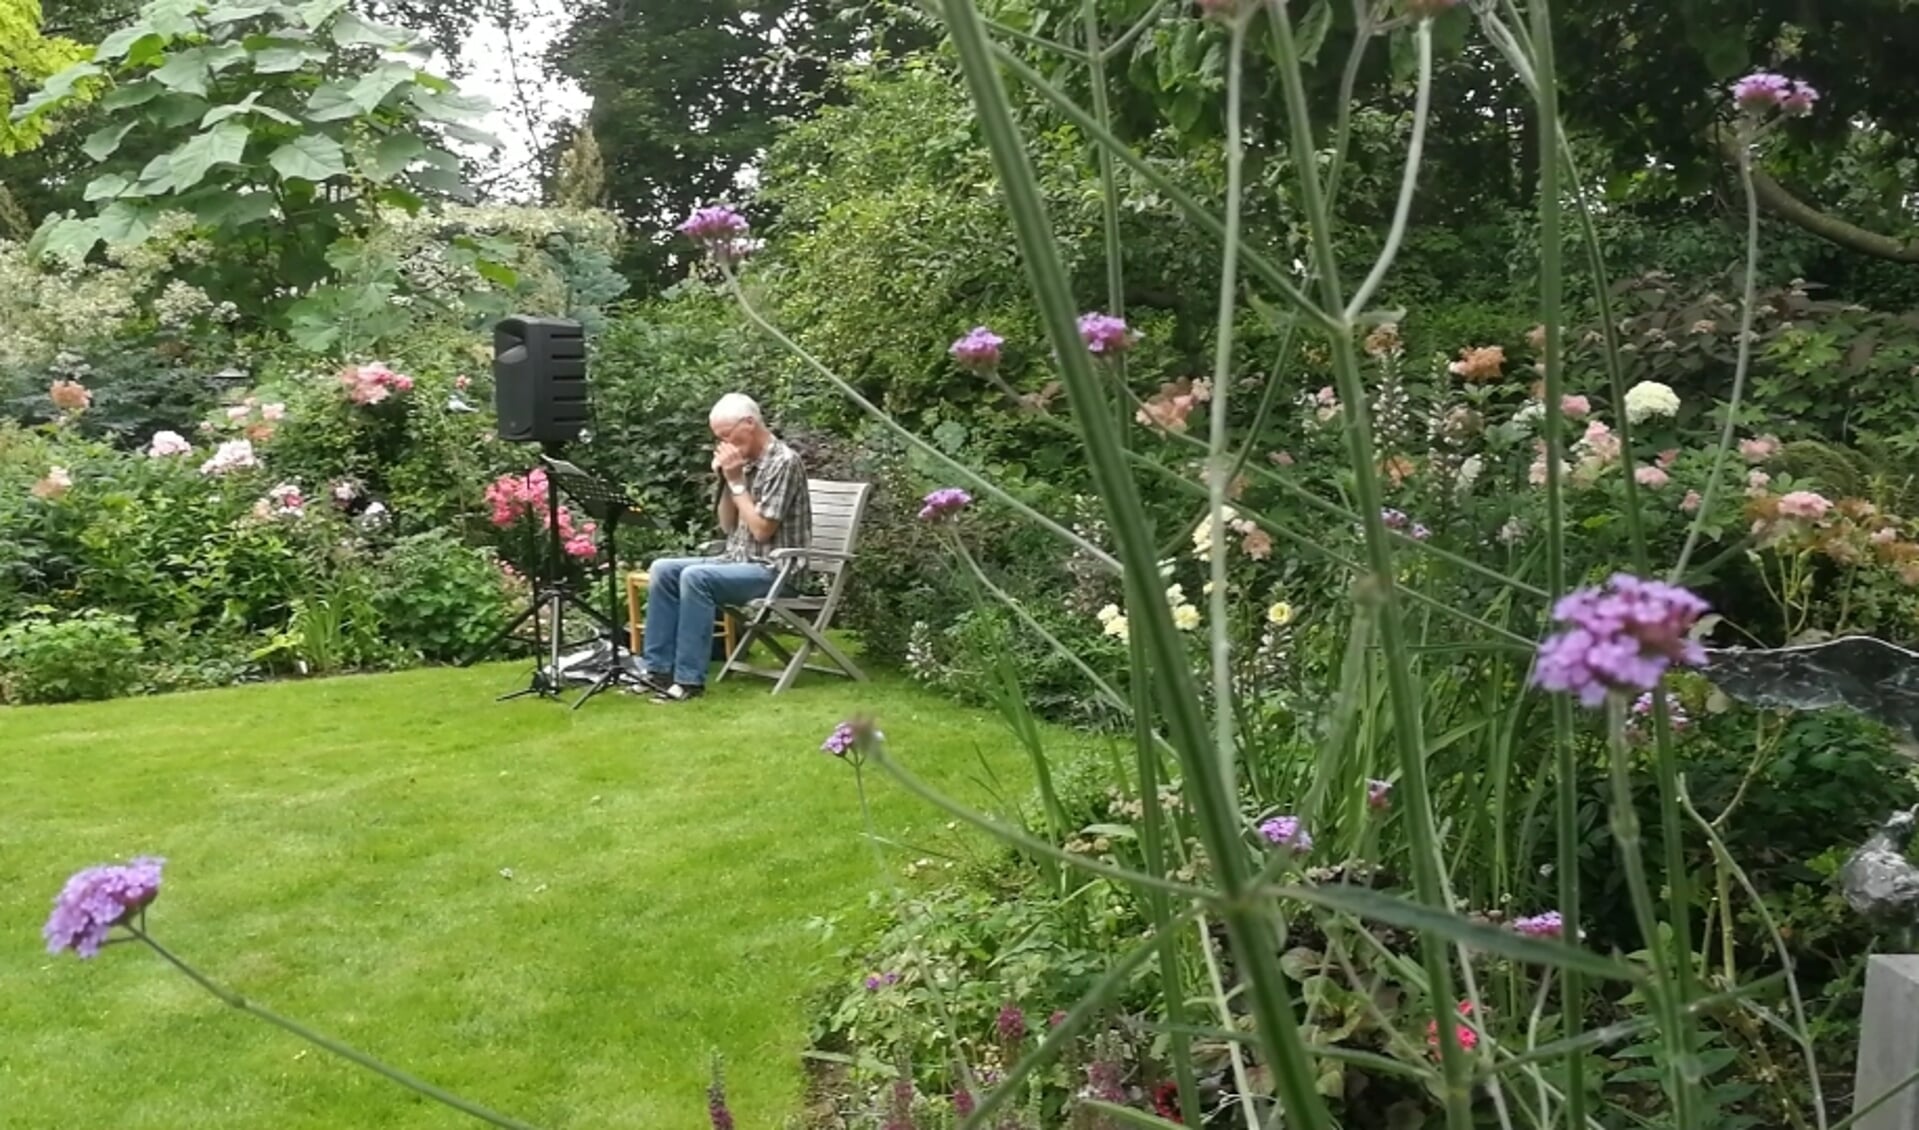 Koos Konijn zorgt voor sfeervolle muziek met zijn mondharmonicas in de tuin.